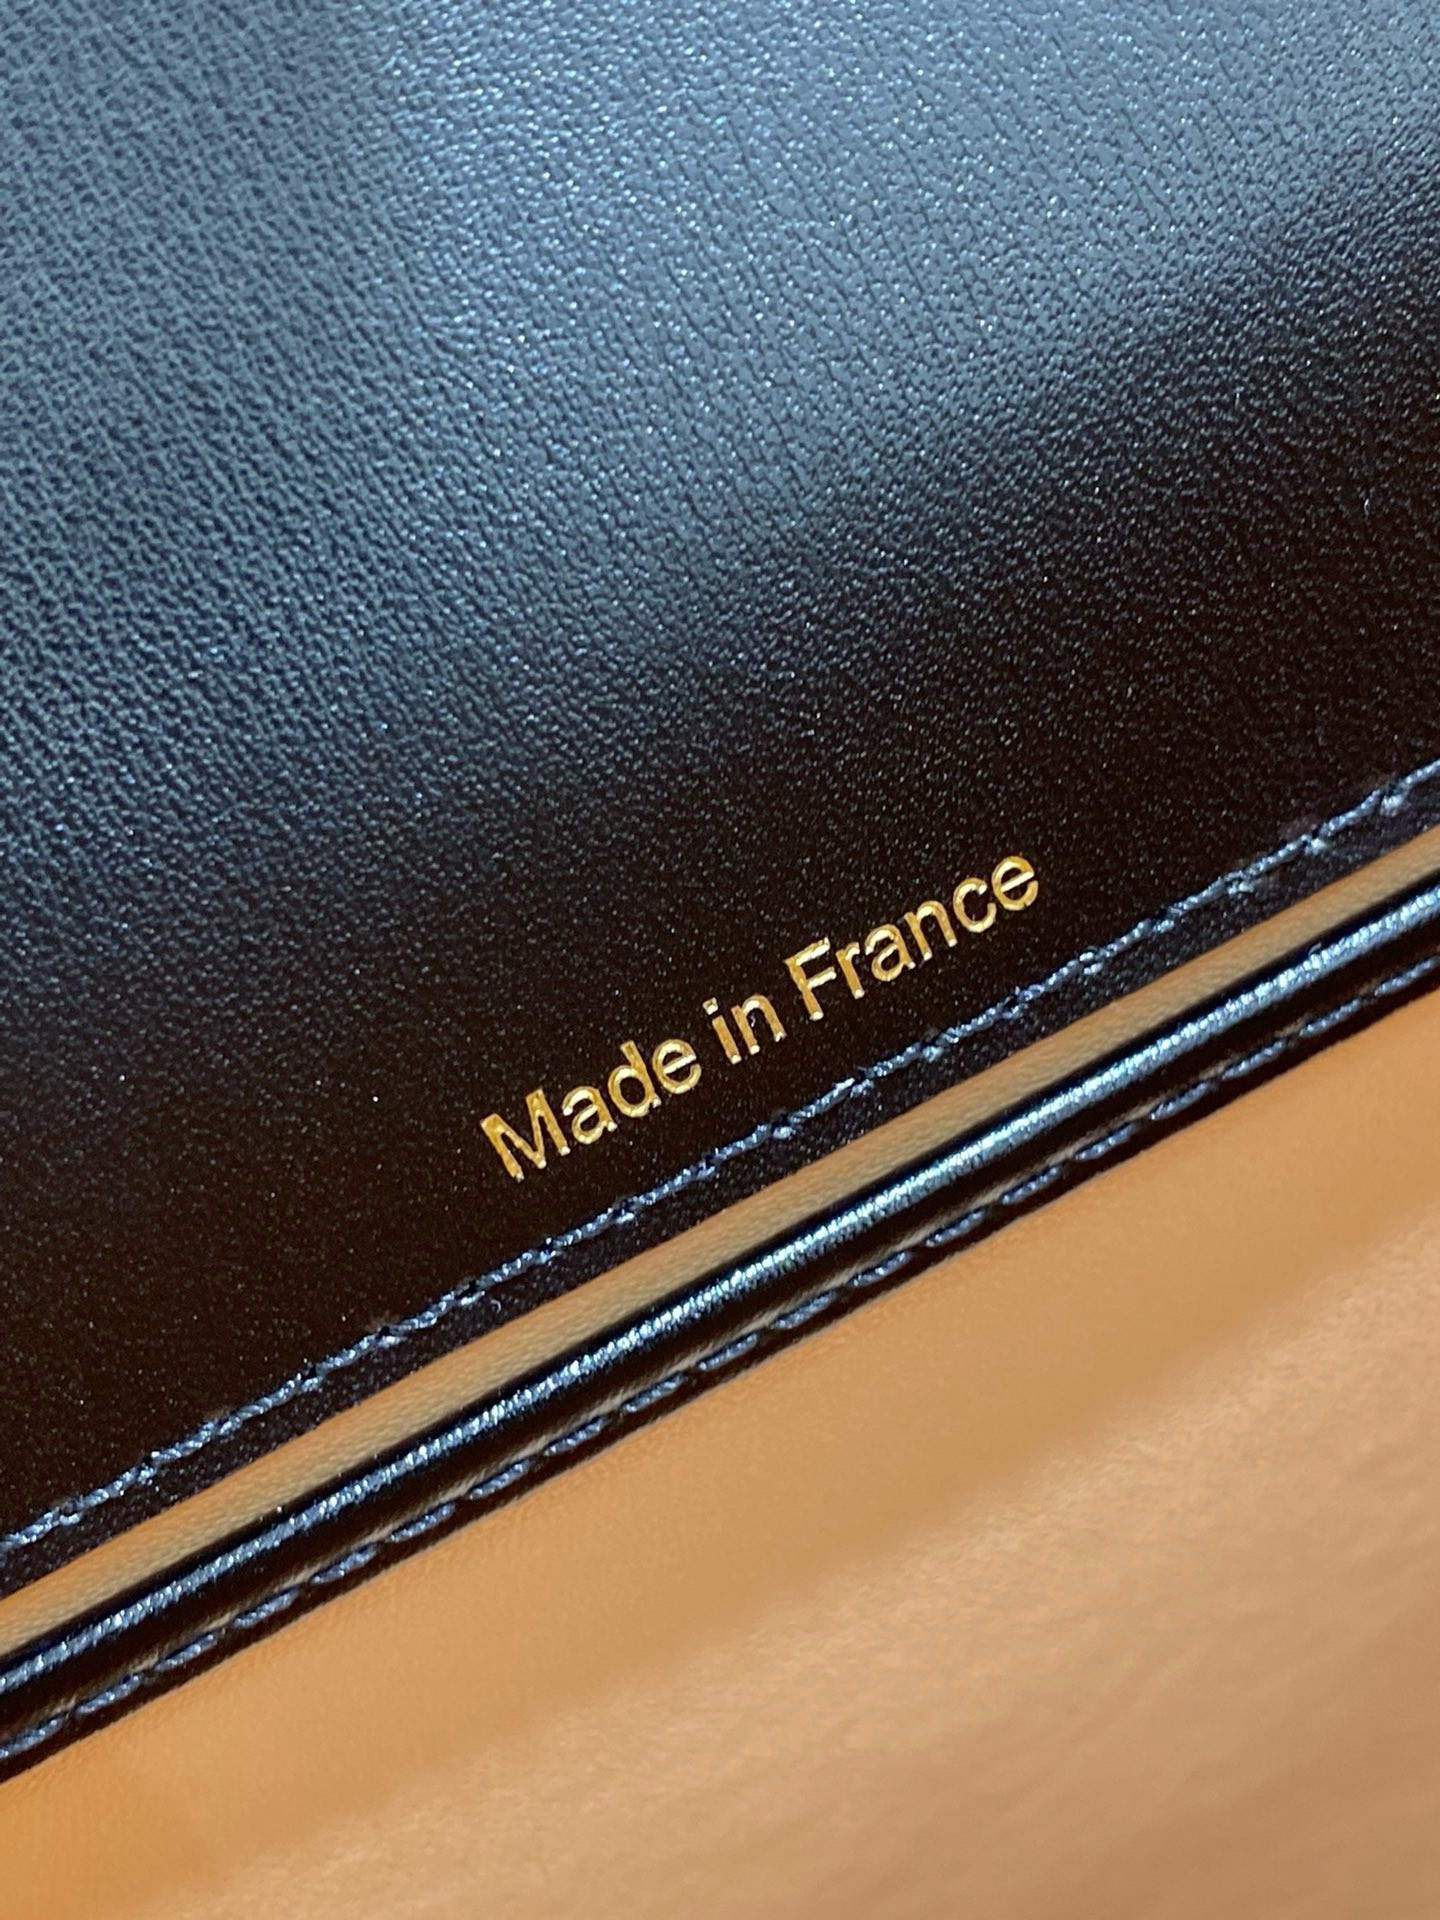 Delvaux Brillant Mini Bag in Black Box Calf Leather 528